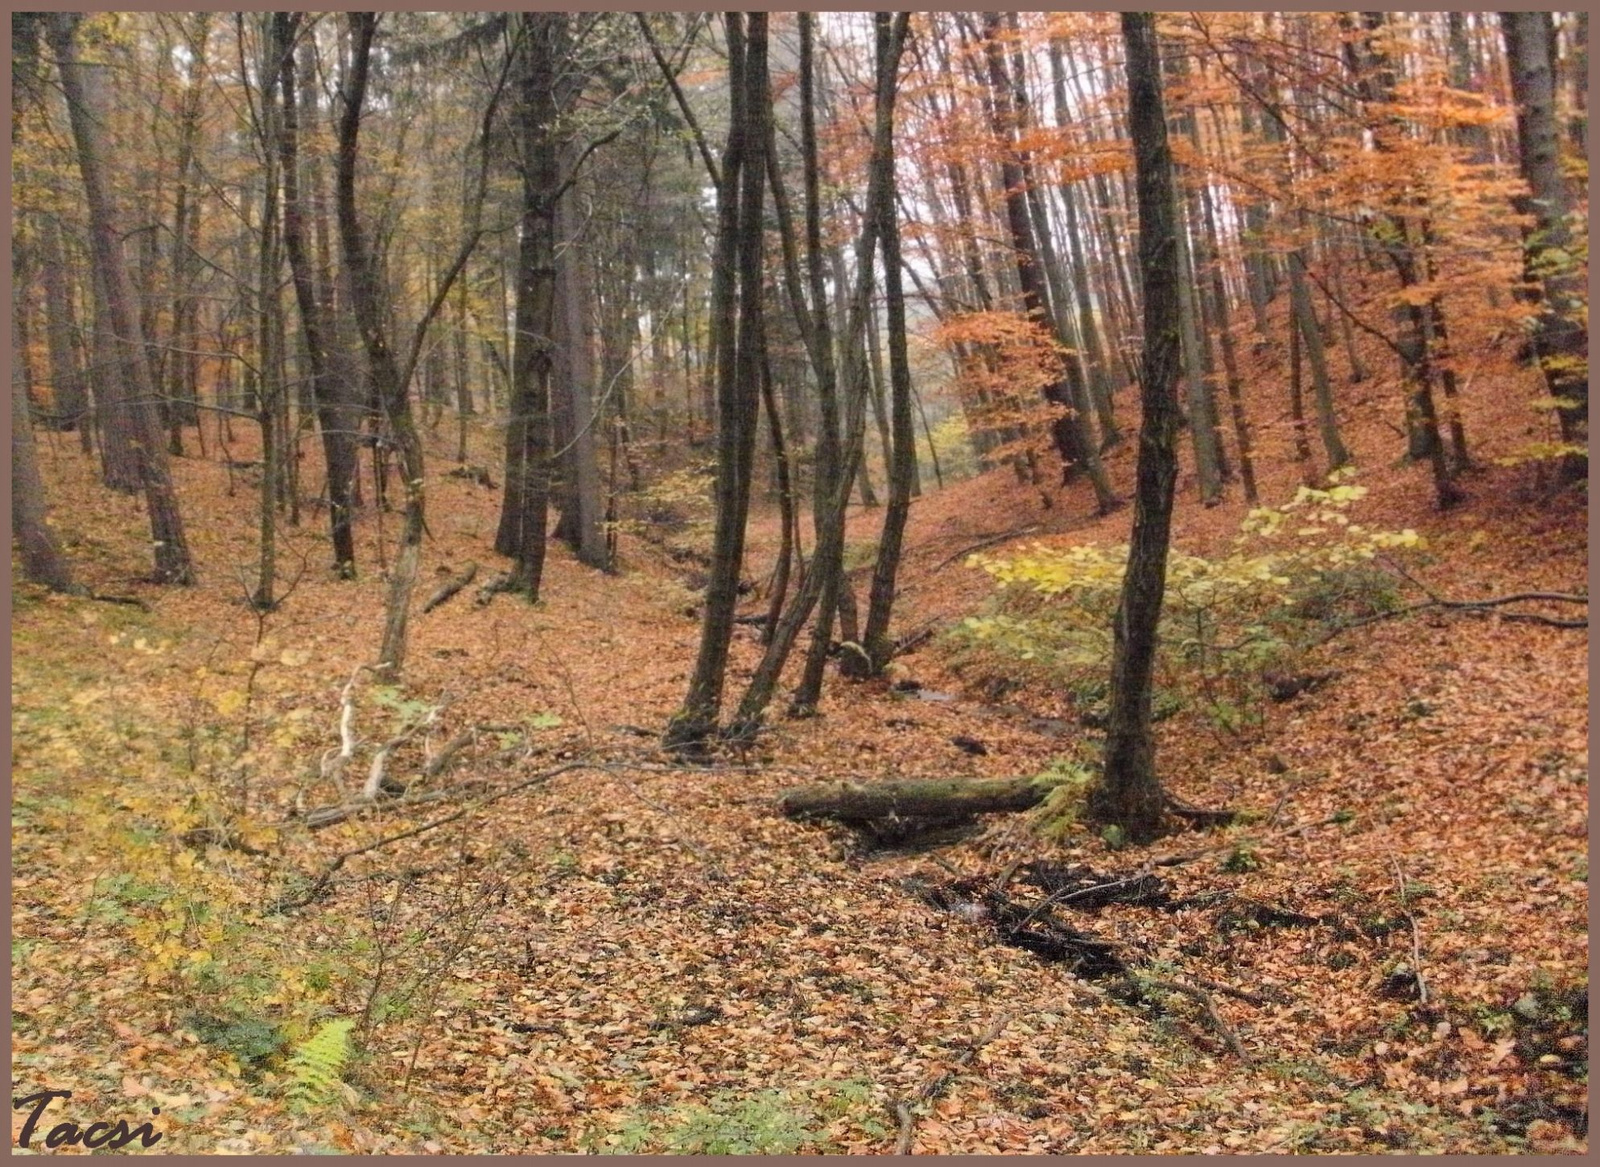 Késő őszi színek az erdőben